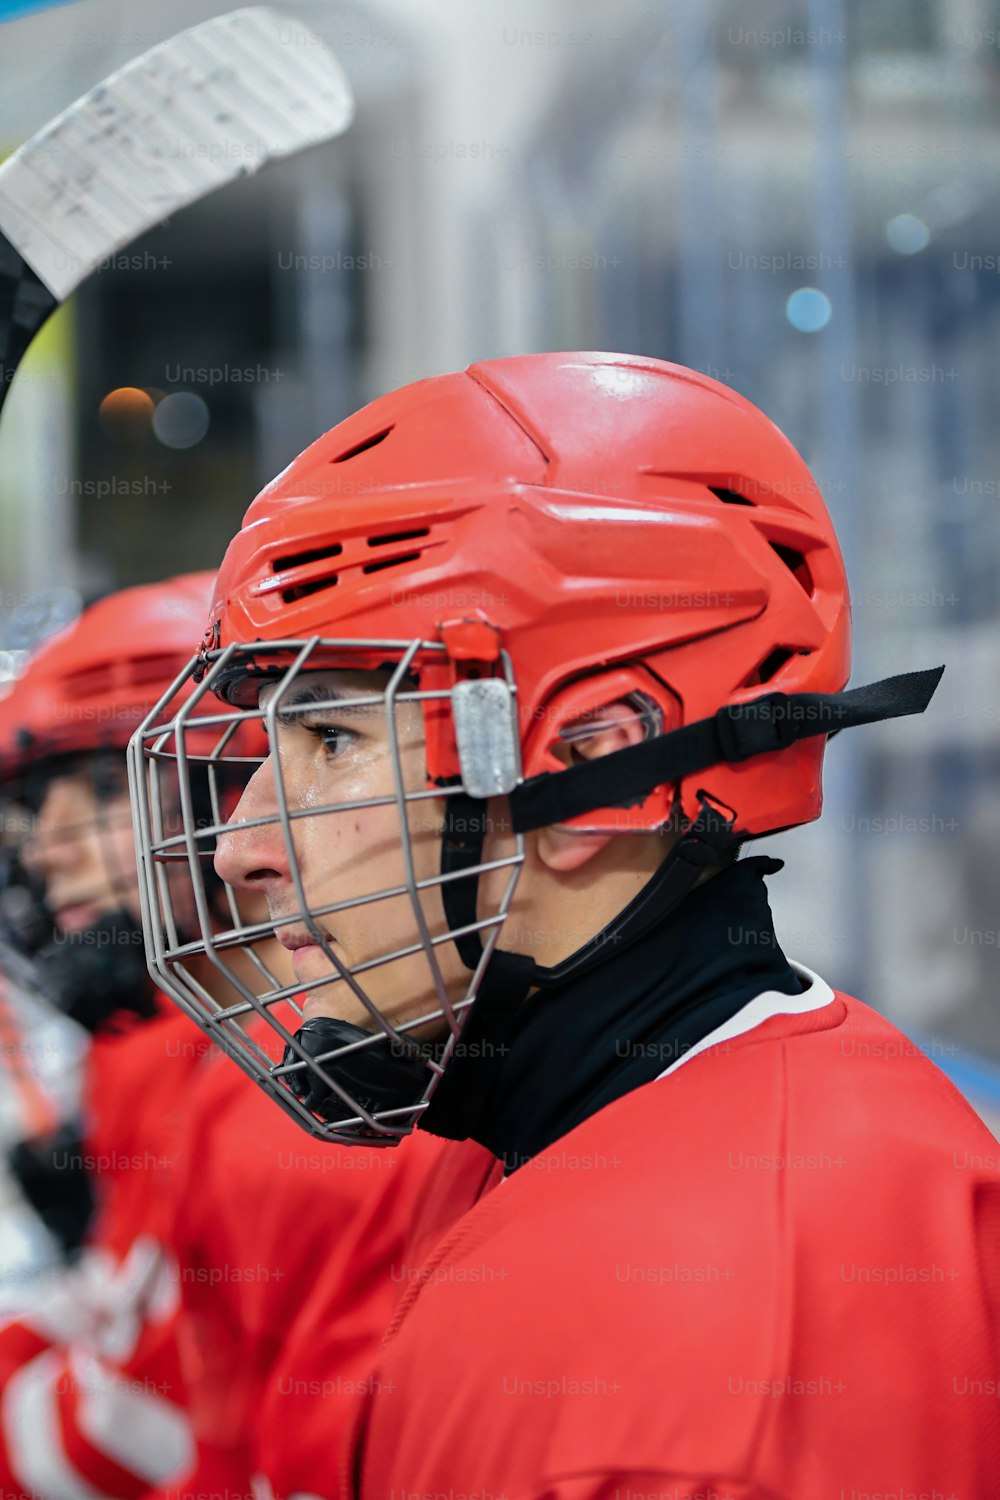 Un jugador de hockey con un casco rojo y sosteniendo un palo de hockey